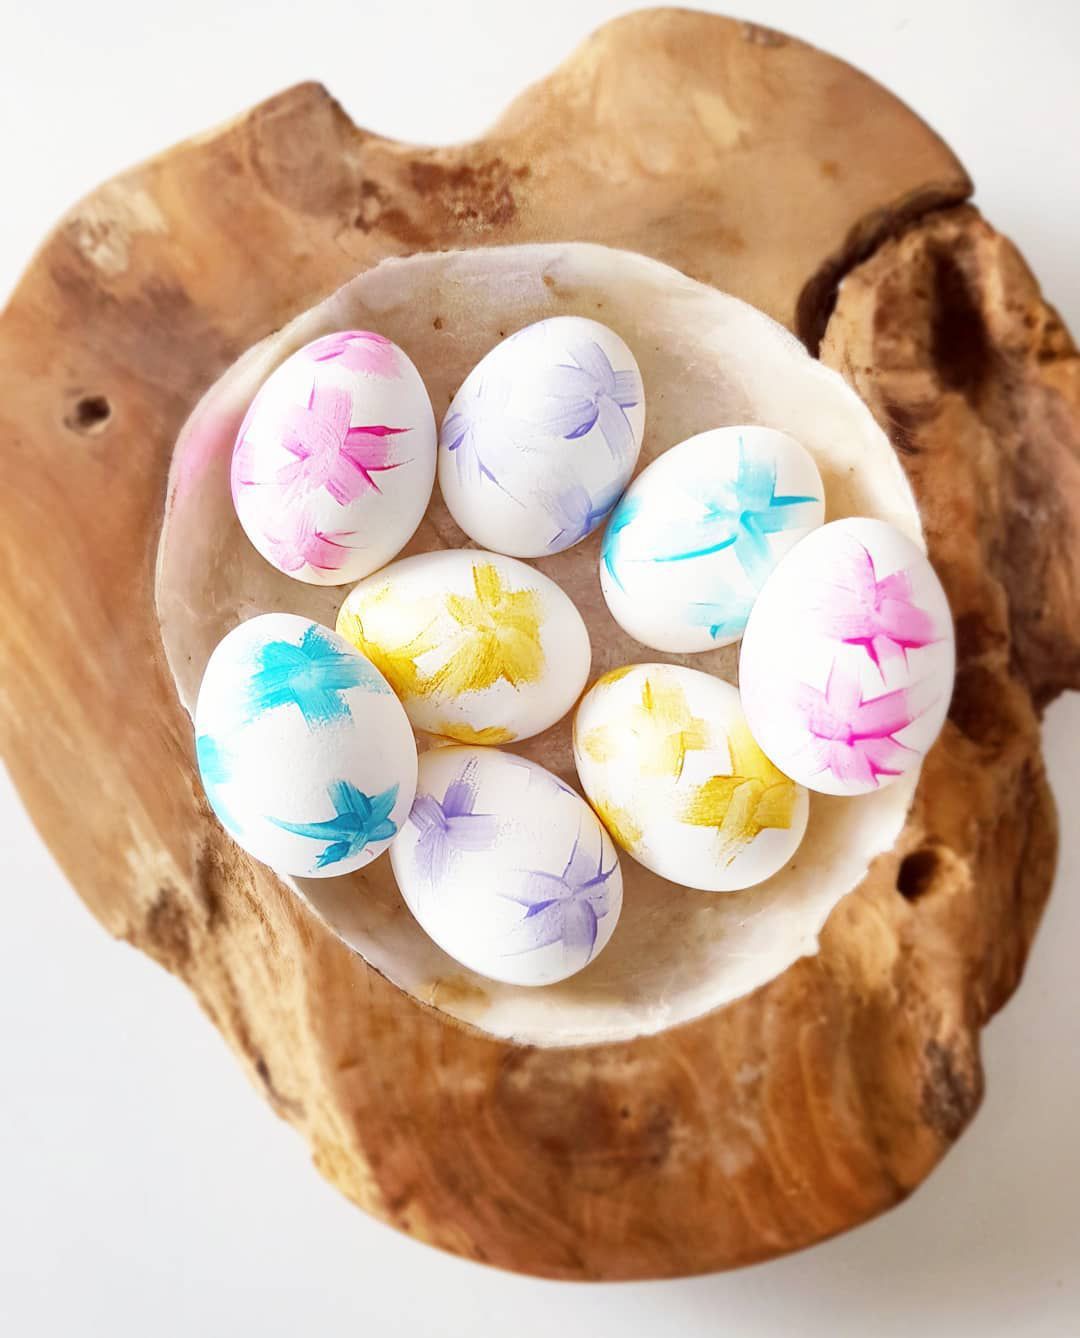 Super jednostavan trik s kojim ćete kuhanjem dobiti bijela jaja, savršena za ukrašavanje